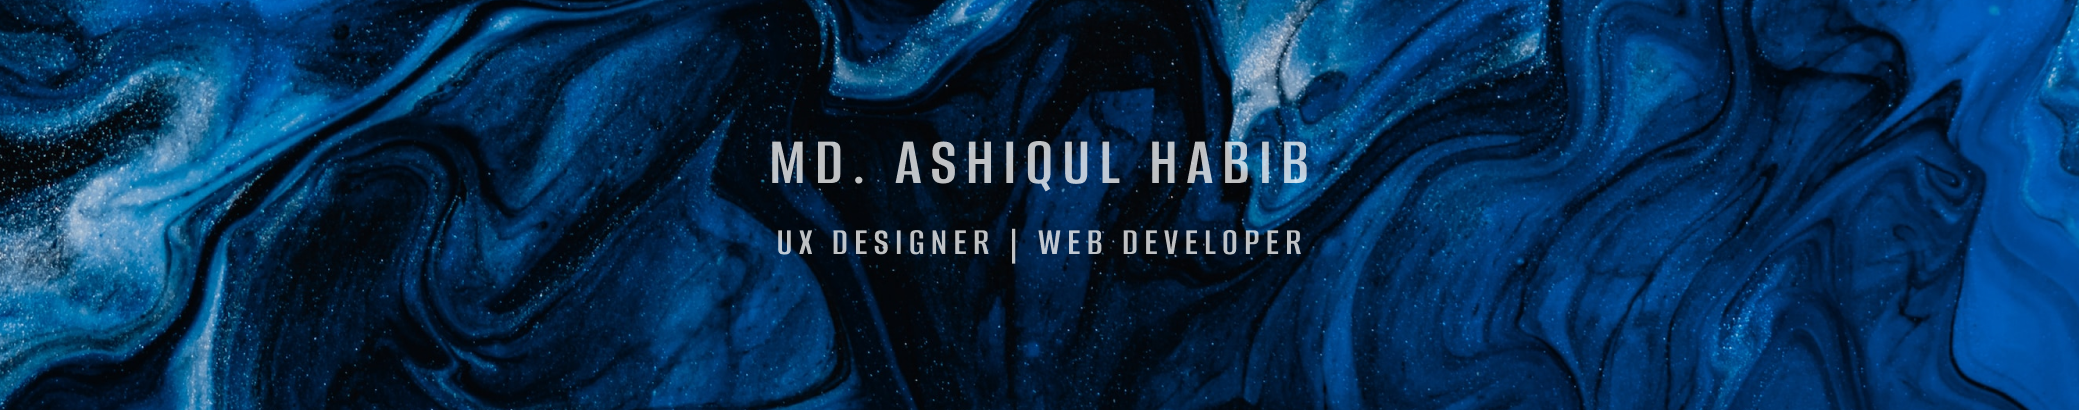 Banner de perfil de Md. Ashiqul Habib